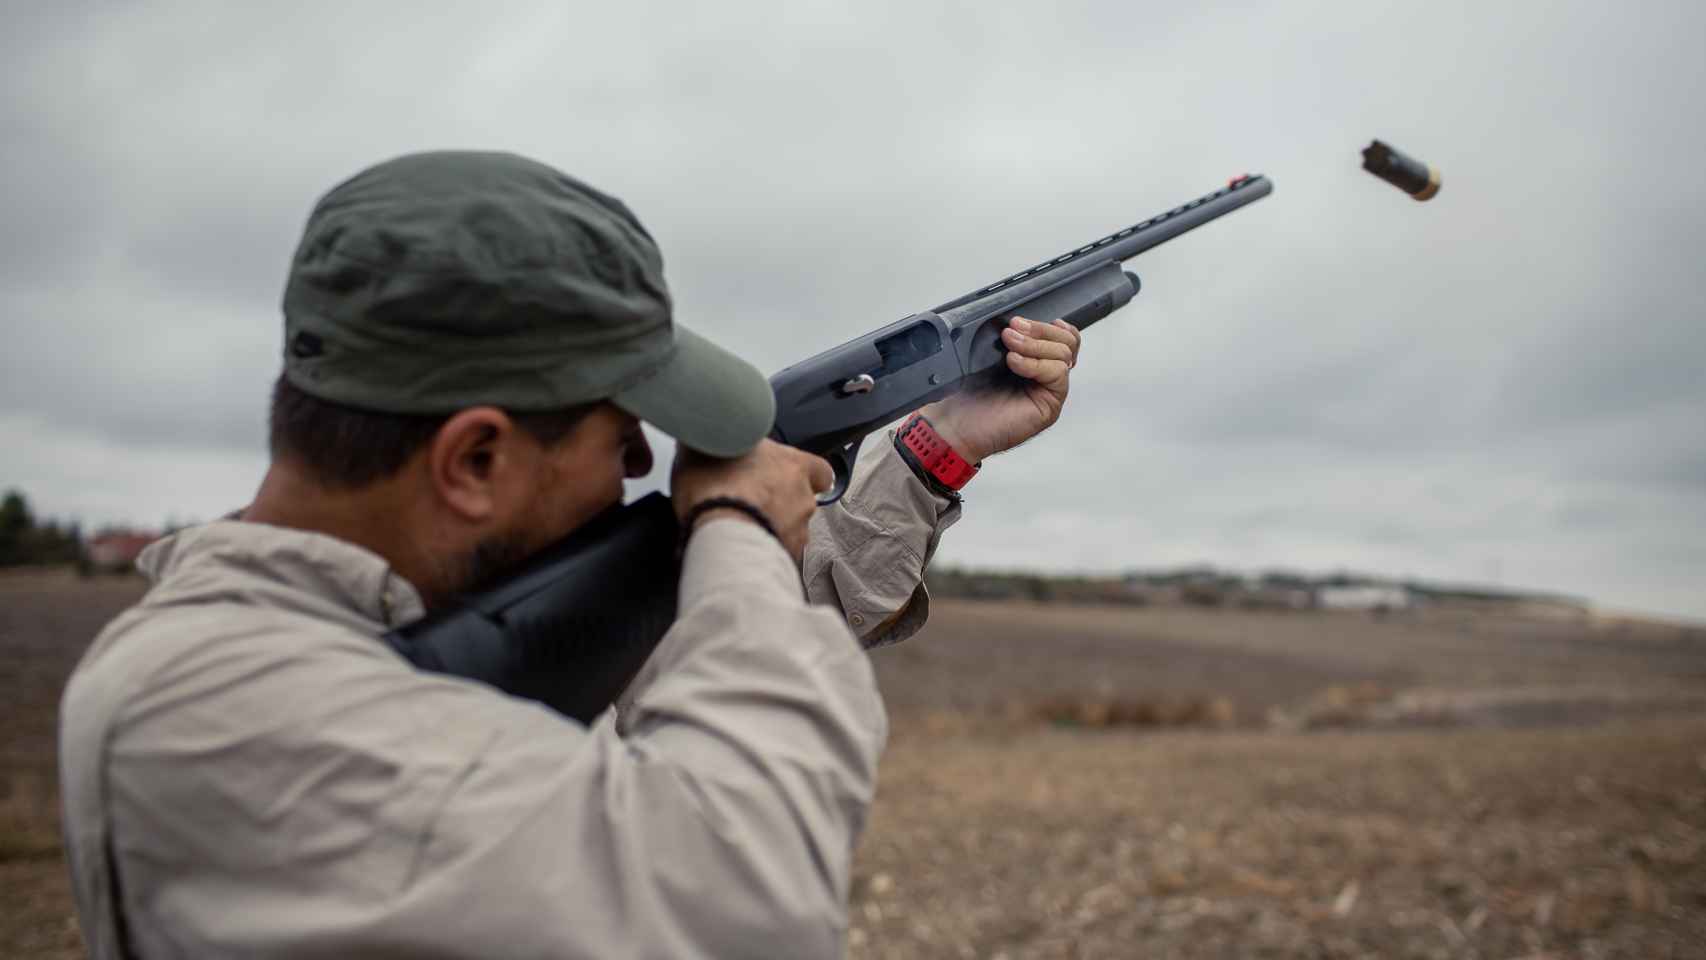 Juan Antonio Romero, vicepresidente de la Sociedad de Caza Lebrijana, efectuando un disparo con su escopeta.